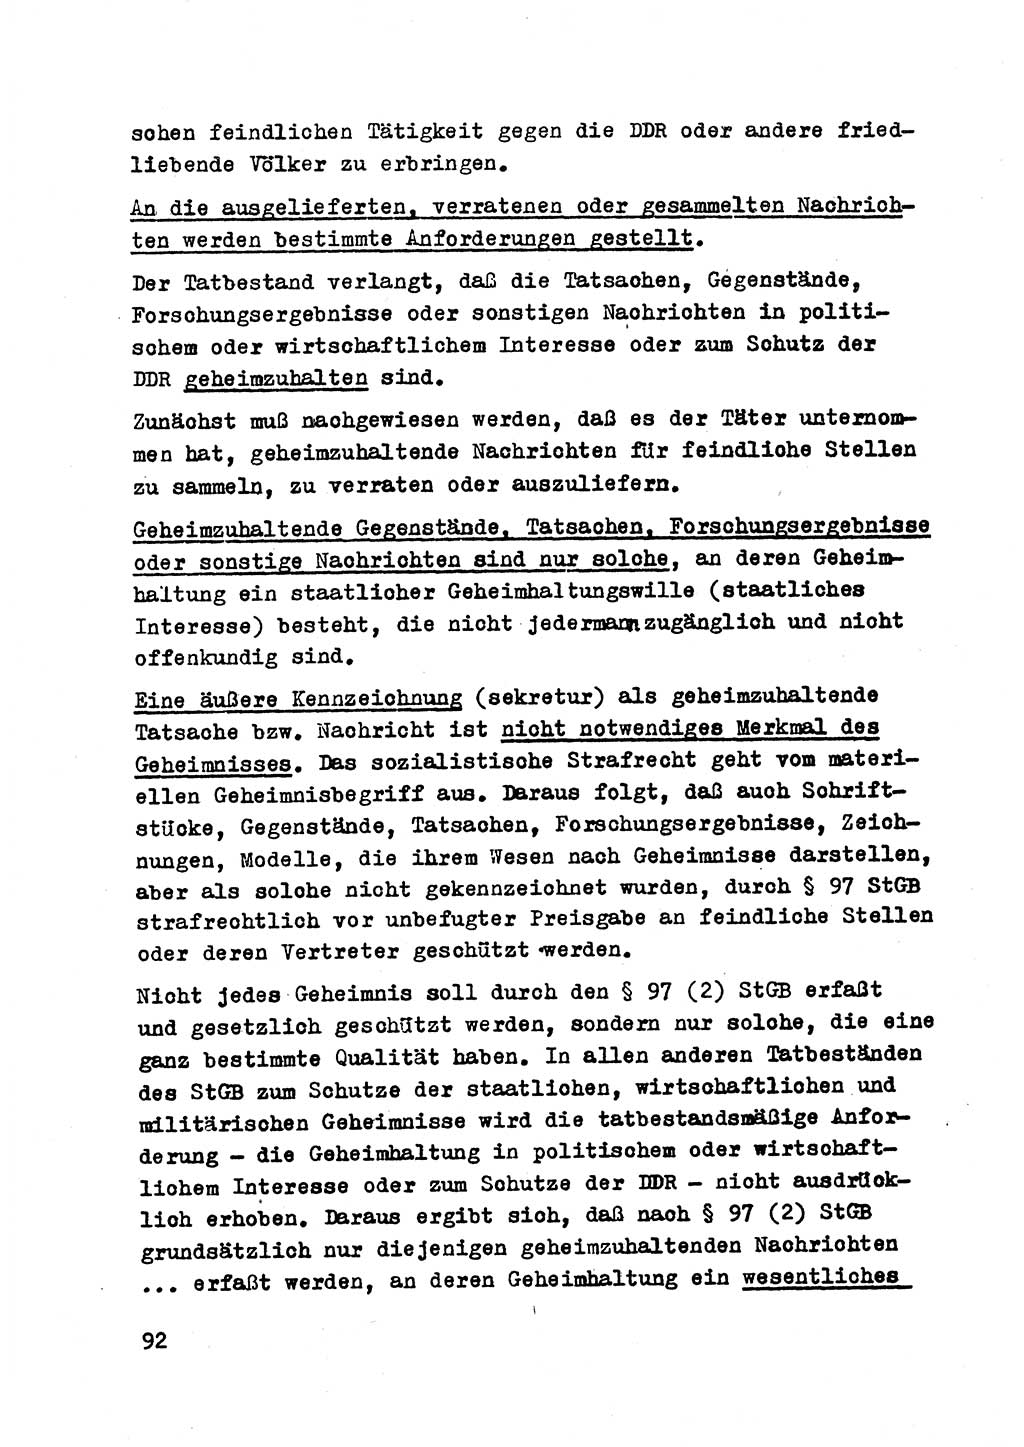 Strafrecht der DDR (Deutsche Demokratische Republik), Besonderer Teil, Lehrmaterial, Heft 2 1969, Seite 92 (Strafr. DDR BT Lehrmat. H. 2 1969, S. 92)